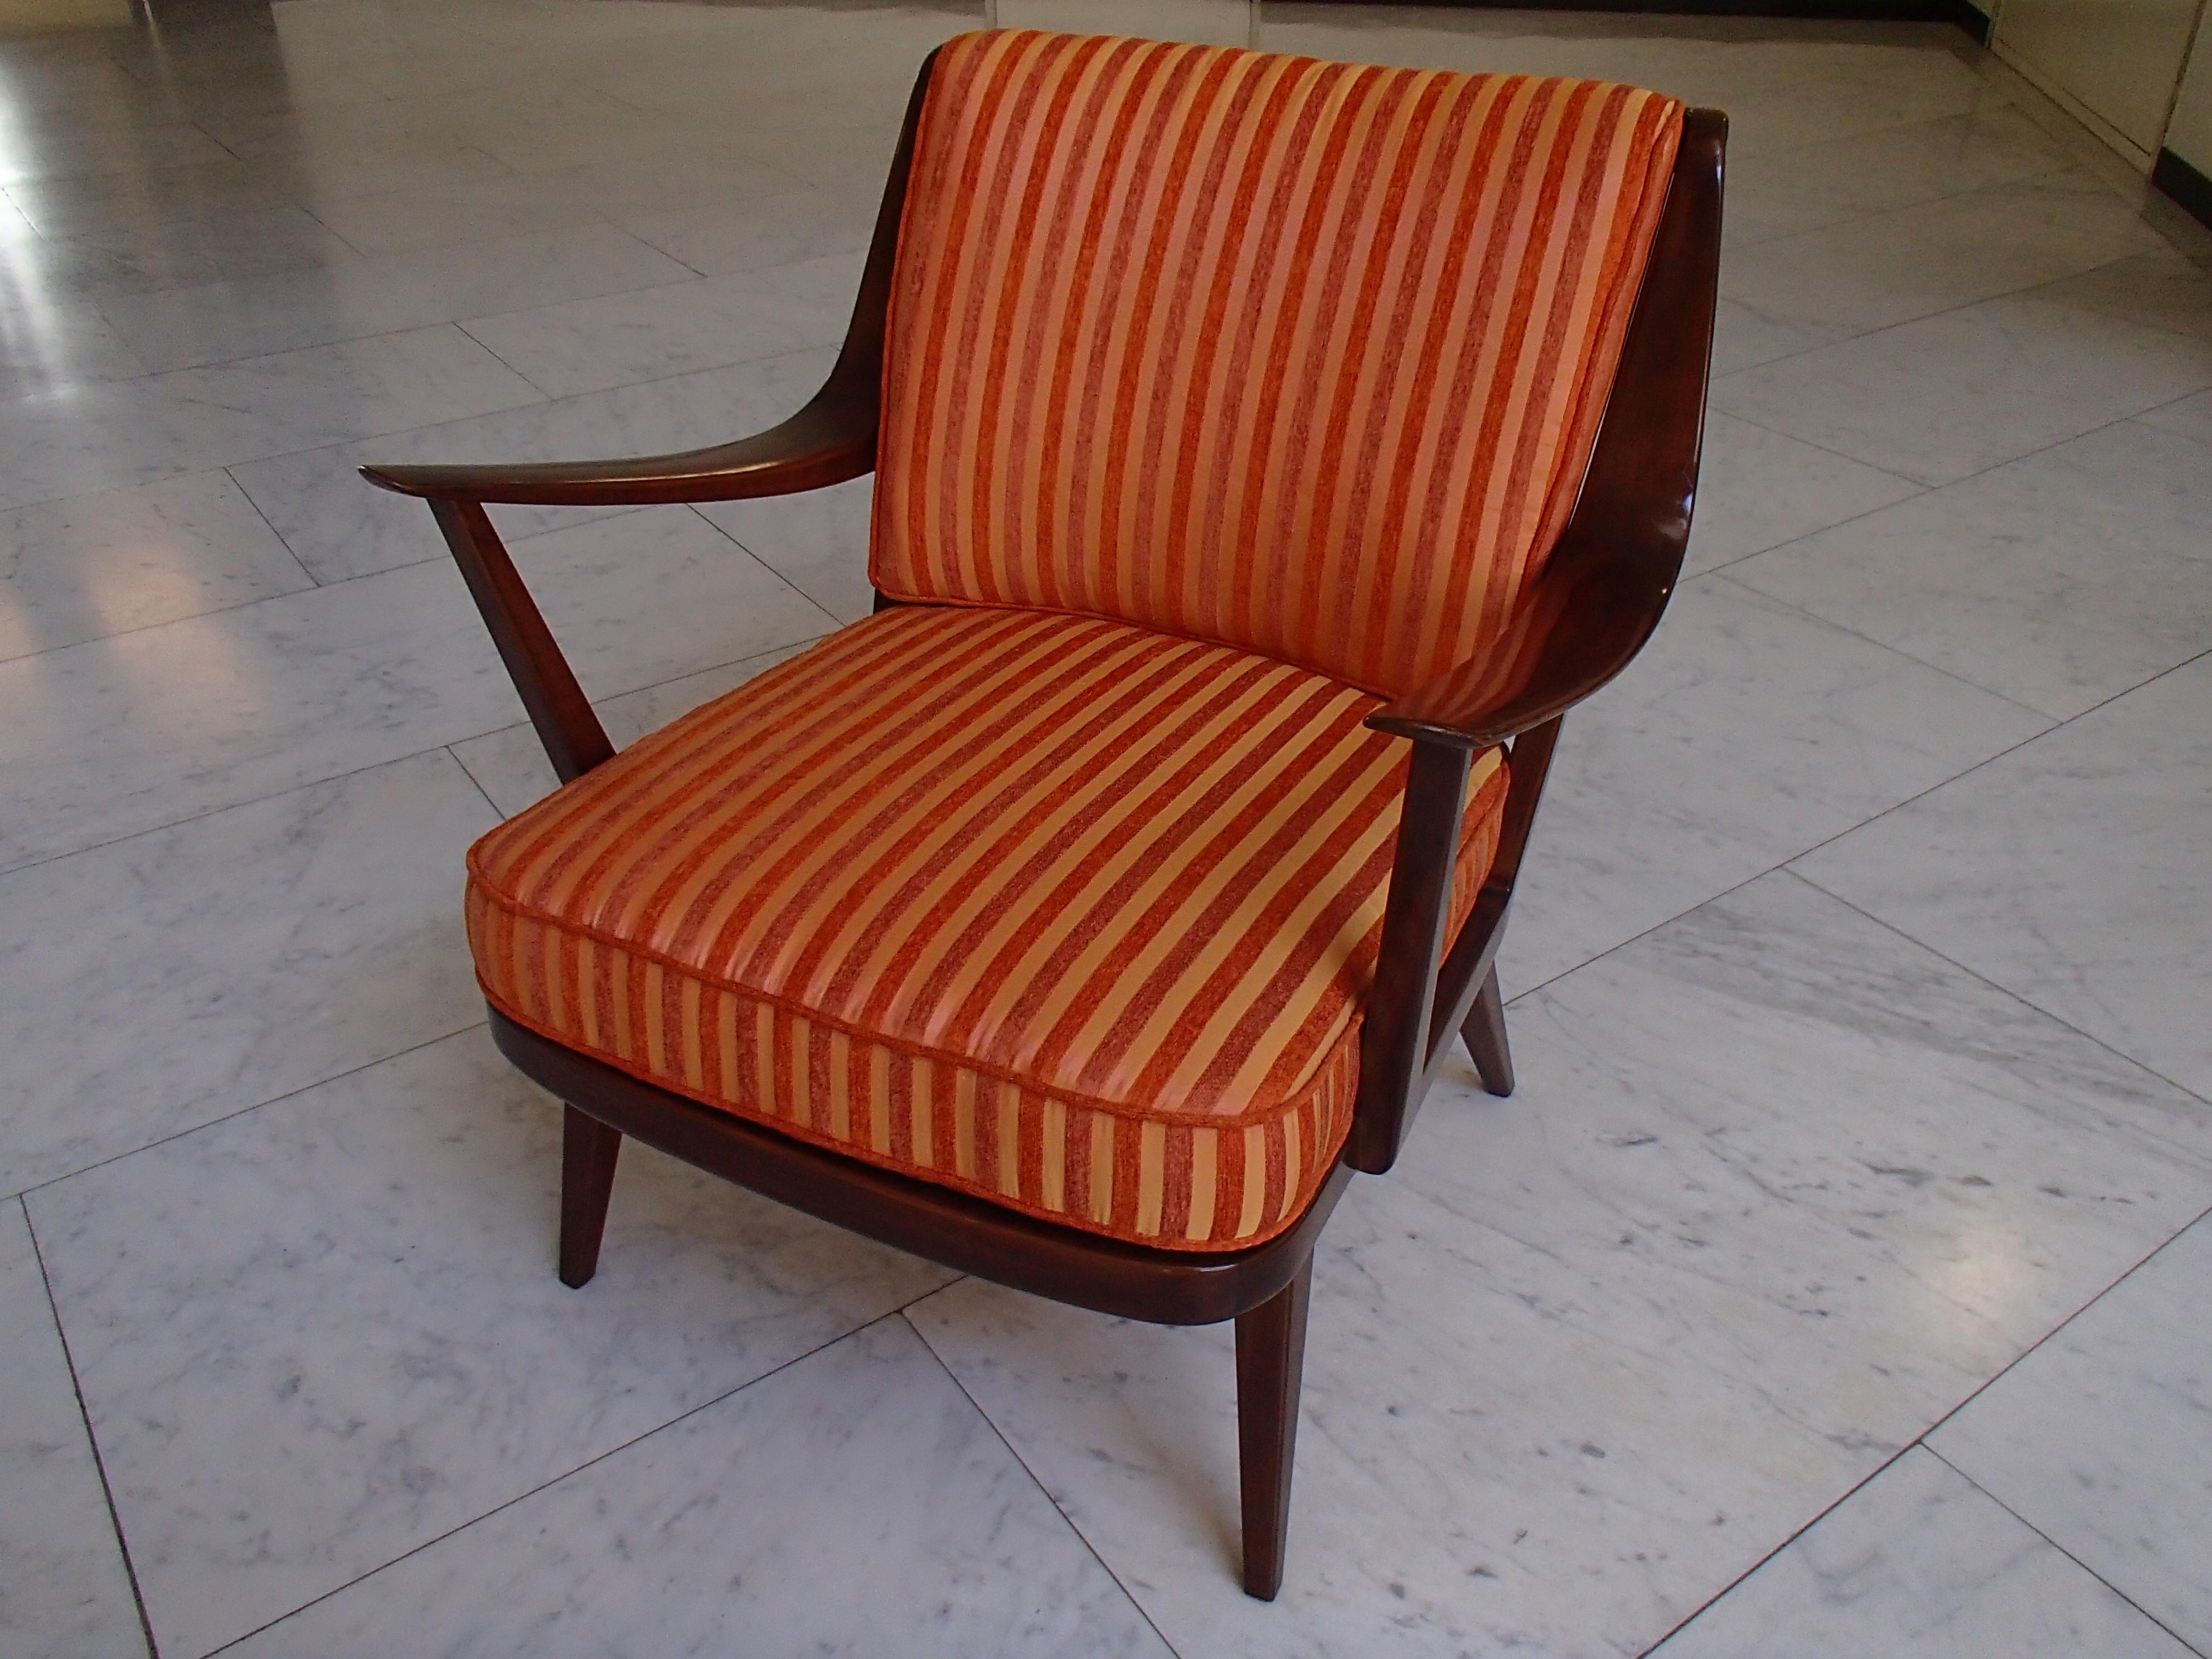 Mid-Century Modern Sessel von Knoll Antimott Kissen in verschiedenen Orangetönen Streifen neu wiederhergestellt.